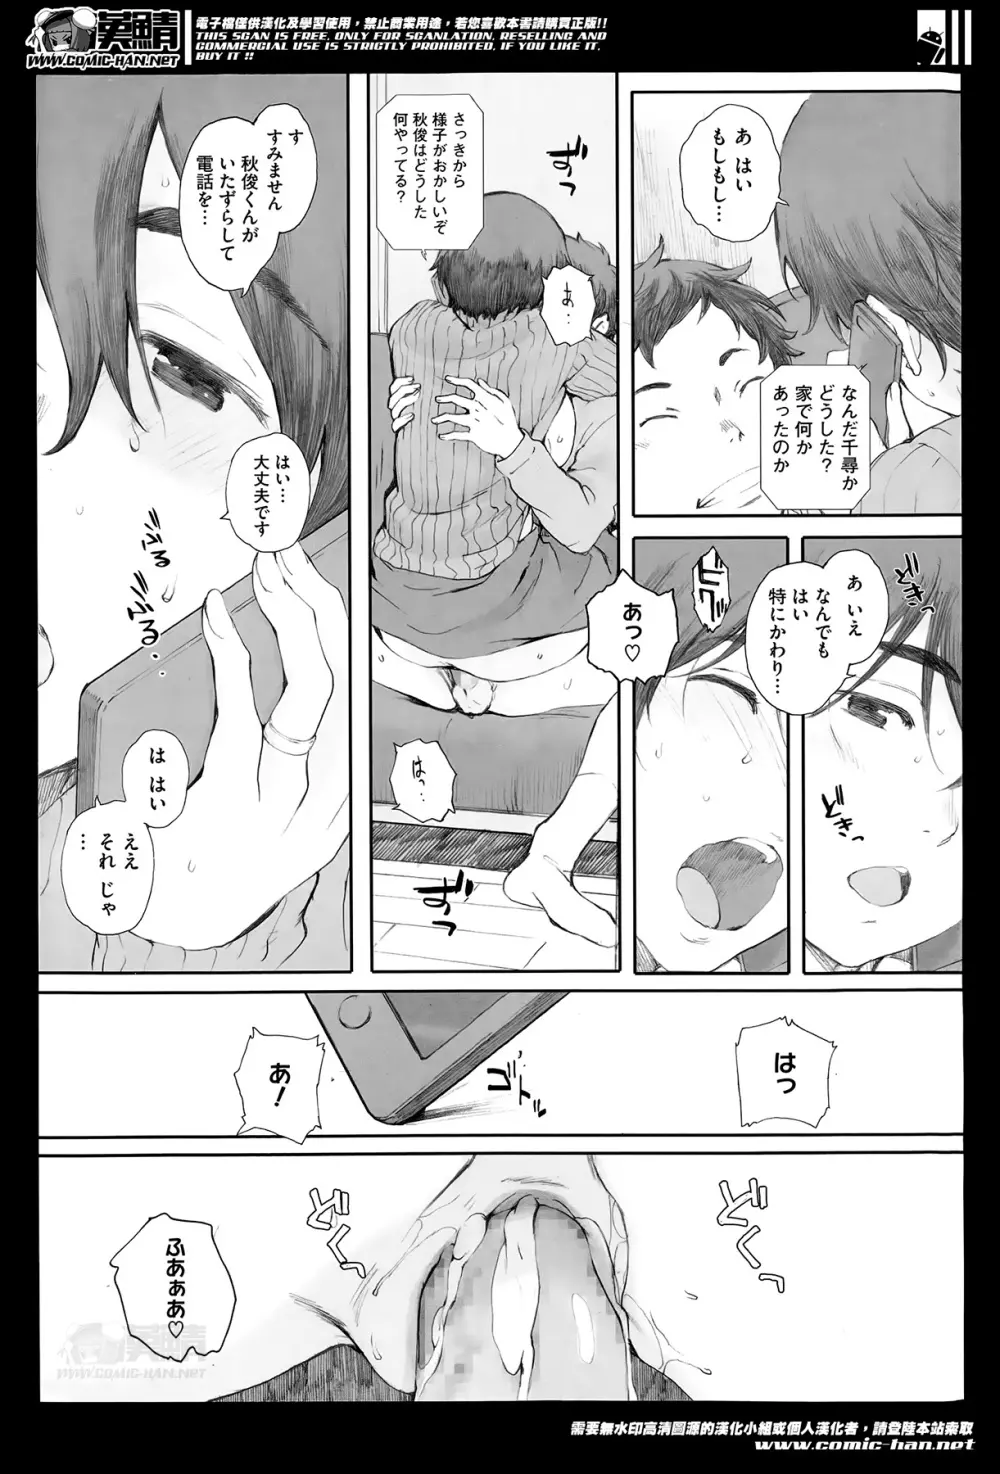 Kamakiri no su Ch.01-02 29ページ